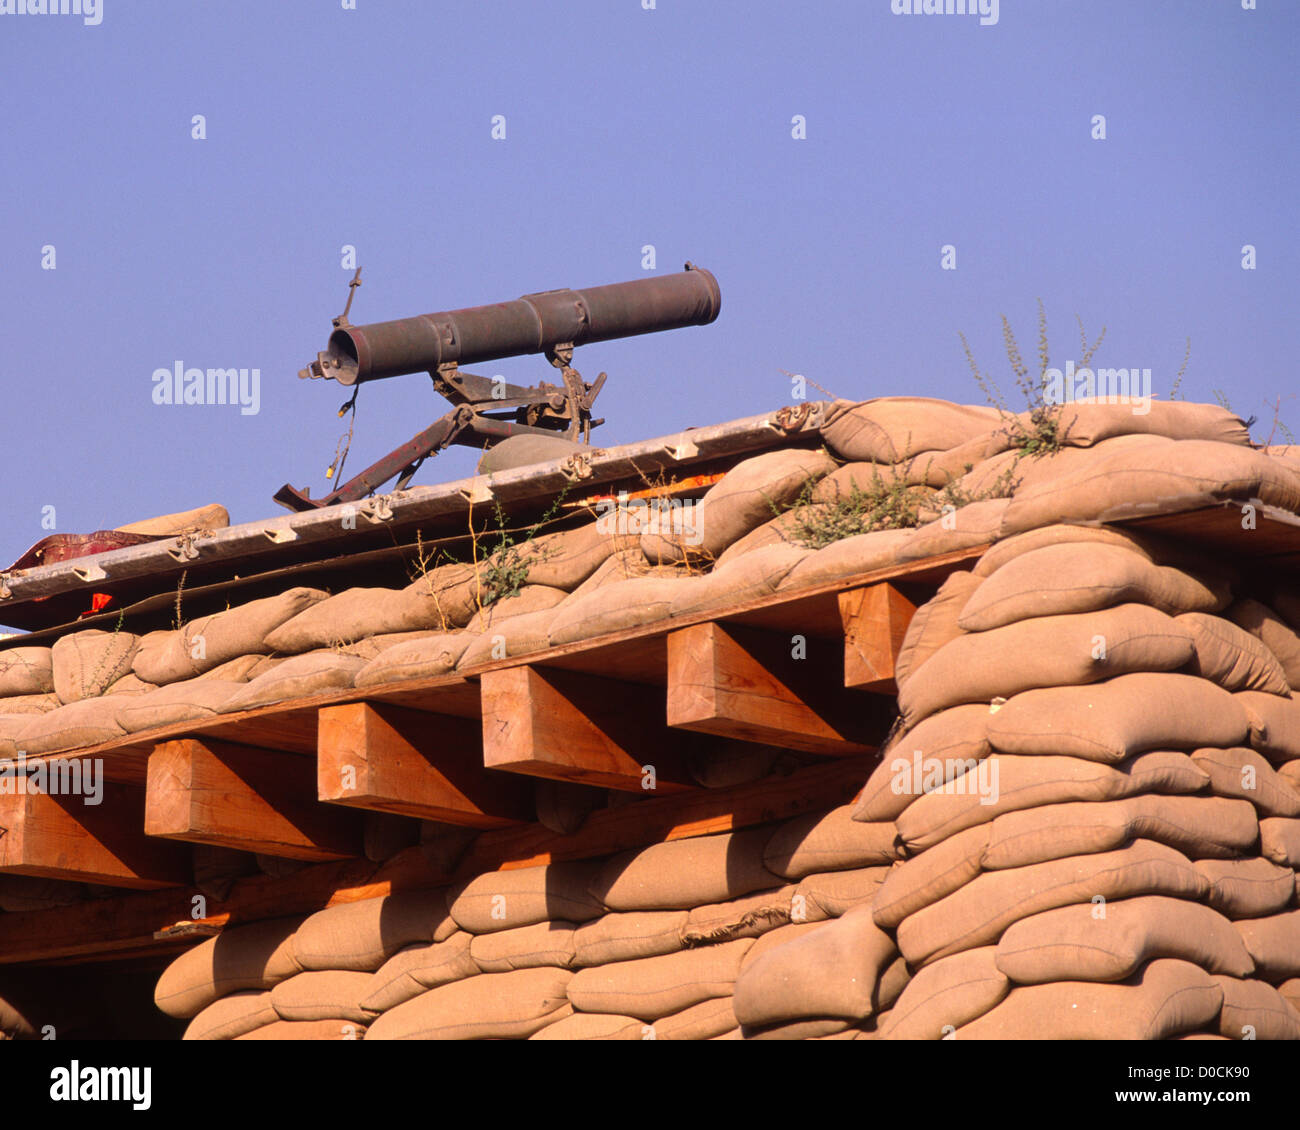 107mm fabriqué chinois Rocket Launcher Taliban capturés est prête au sommet Bunker Sacs Base avancée Banque D'Images